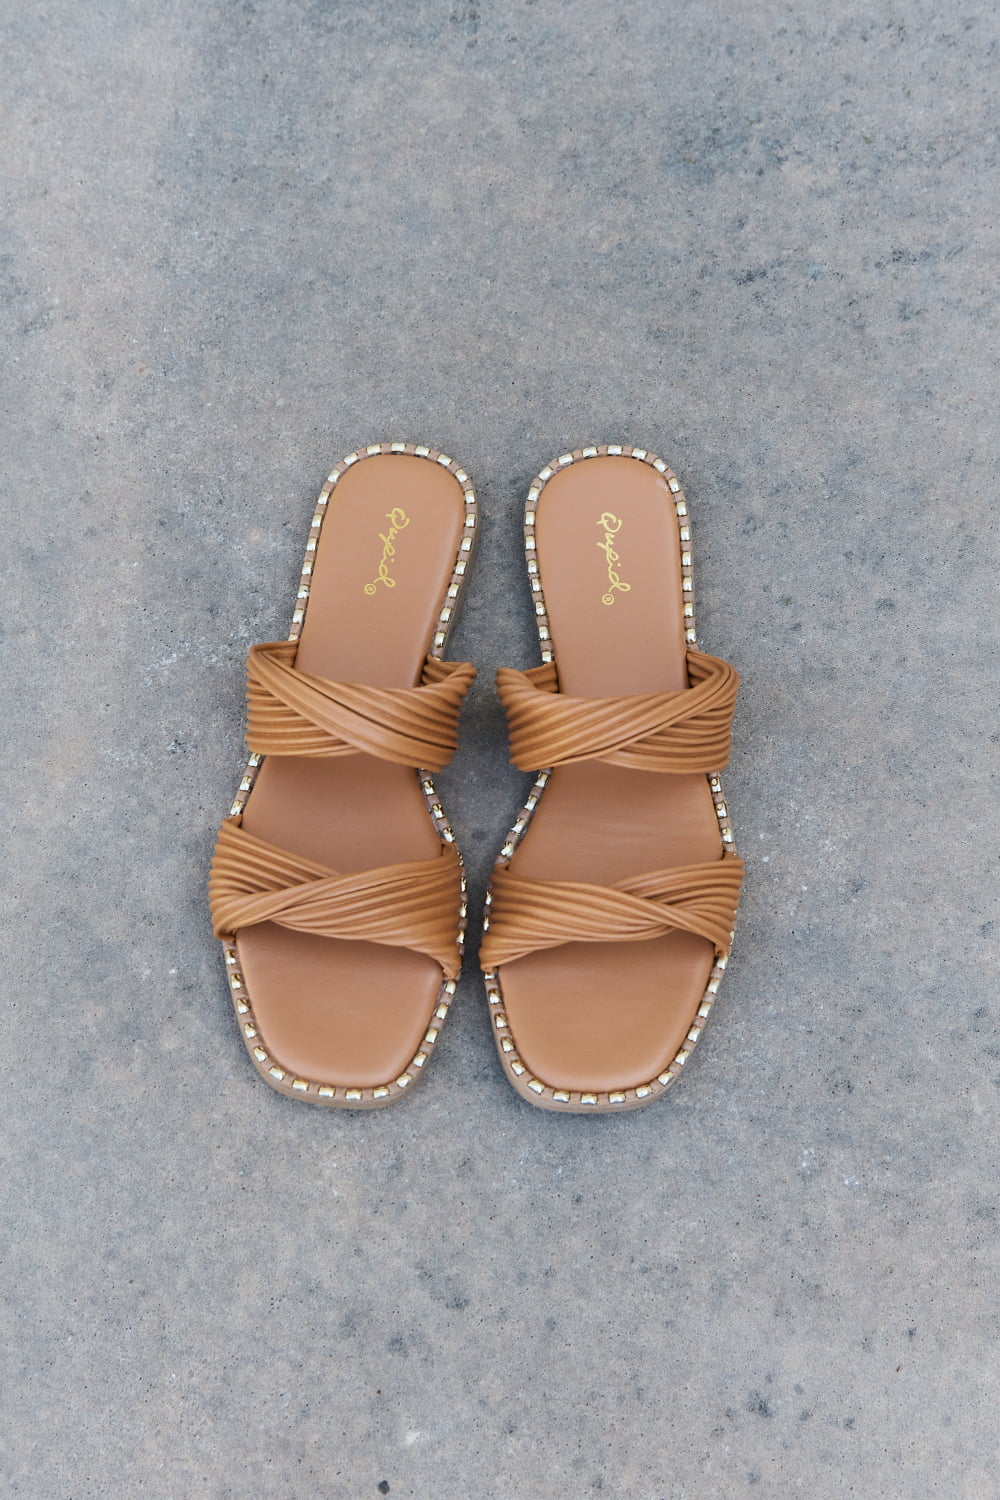 Qupid Summertime Fine Double Strap Twist Sandals - Thandynie